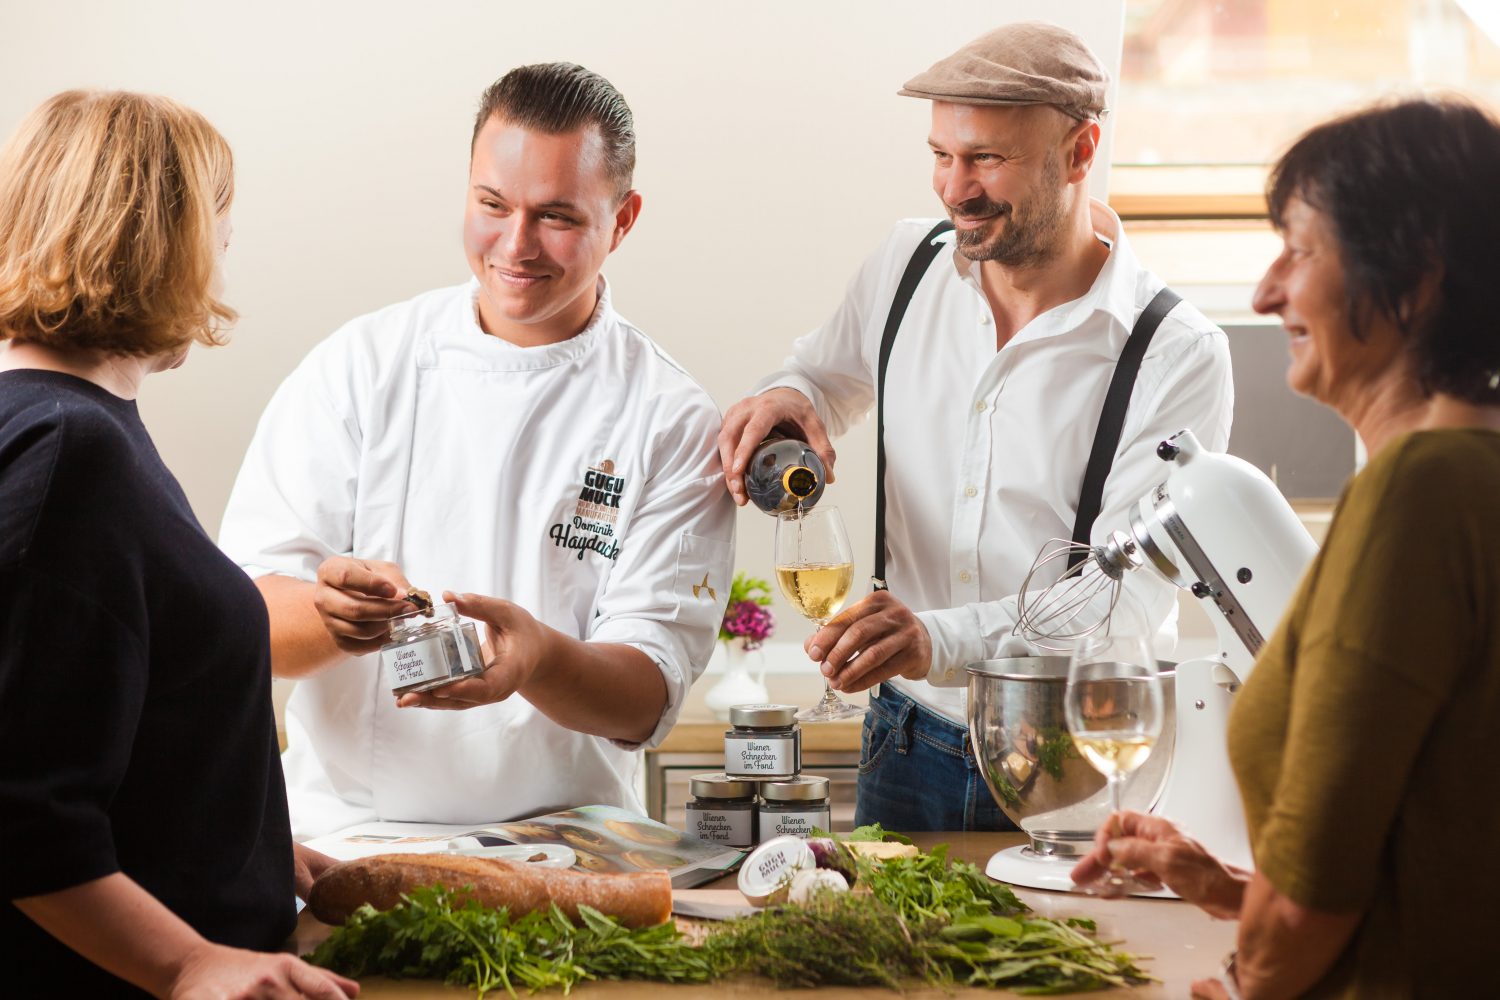 Schneckenkochkurs mit Andreas Gugumuck und Dominik Hayduck am Hof der Wiener Schnecken-Manufaktur, Sammeln Sie Kocherfahrung mit einem Spitzenkoch. Er gibt Tipps für Schneckenkompositionen für deine Veranstaltung.